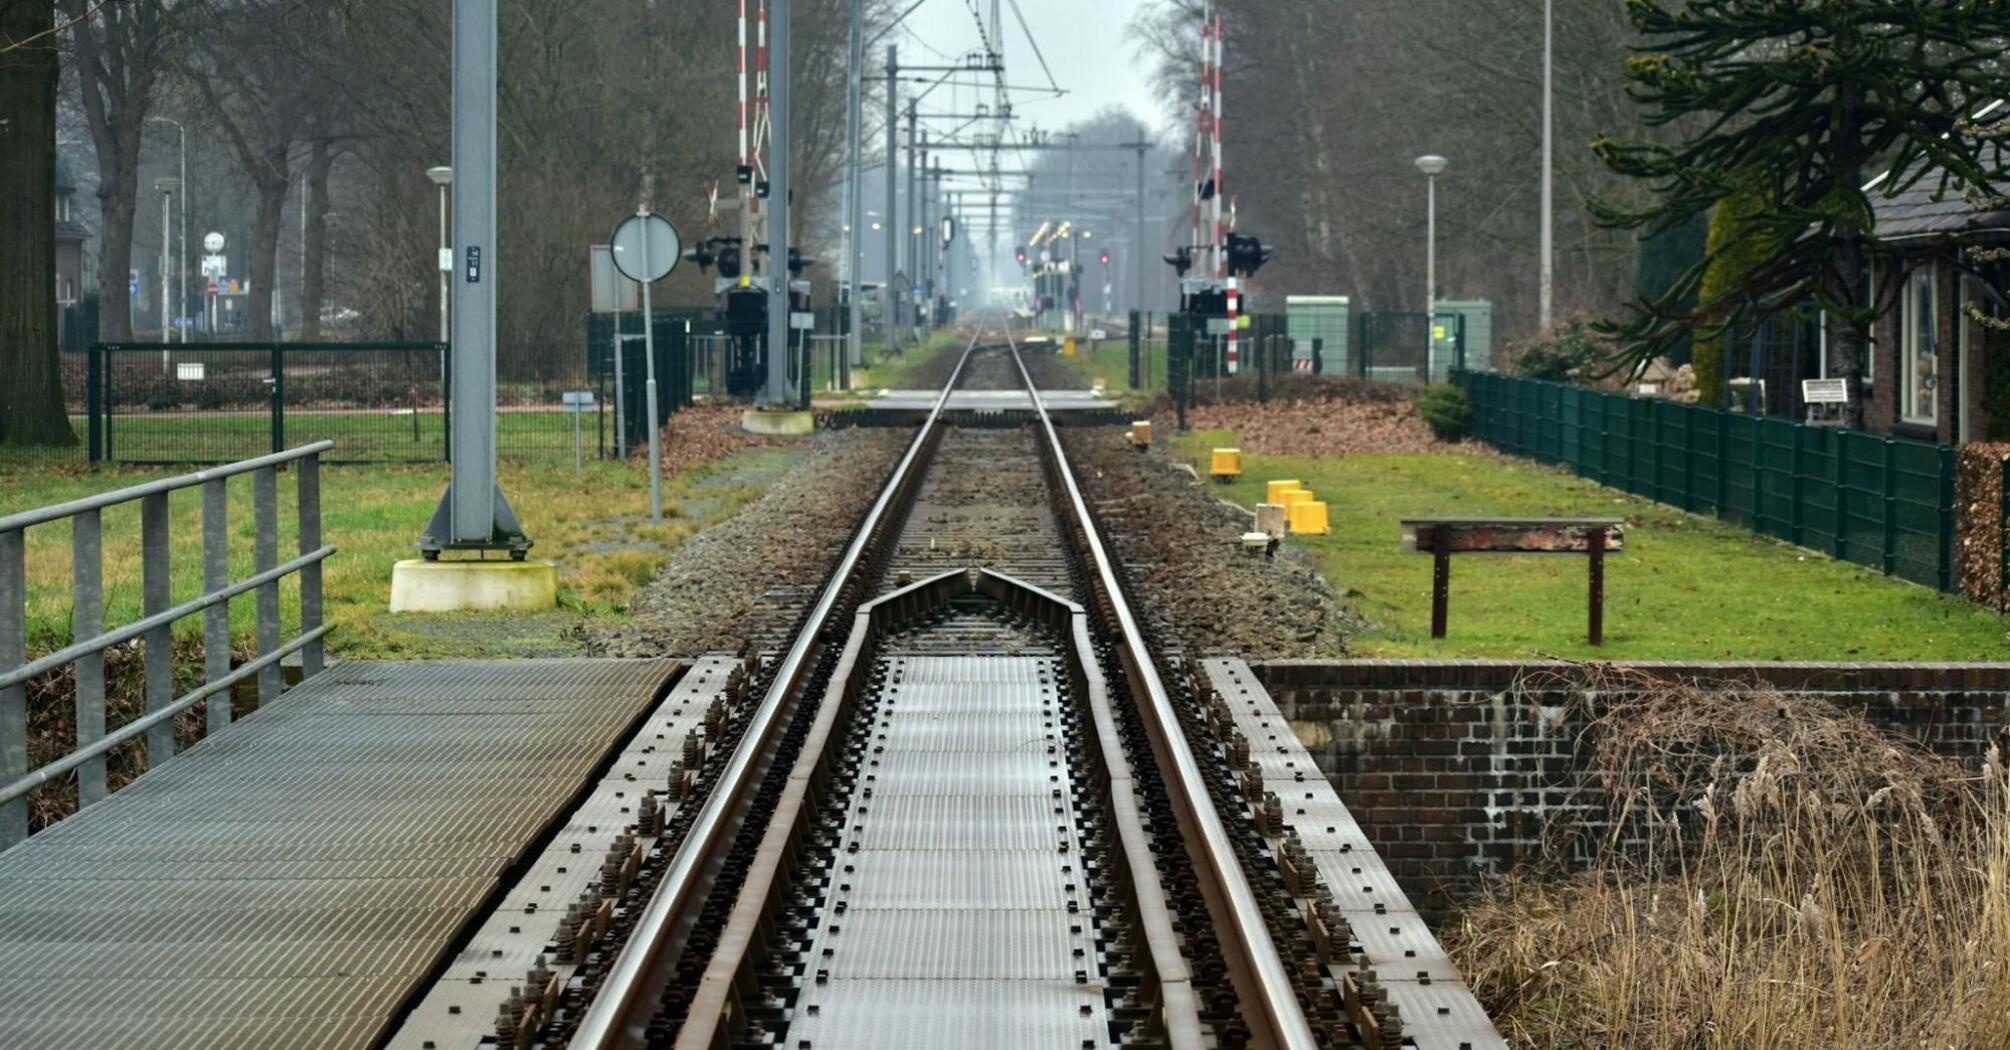 Railway tracks undergoing maintenance